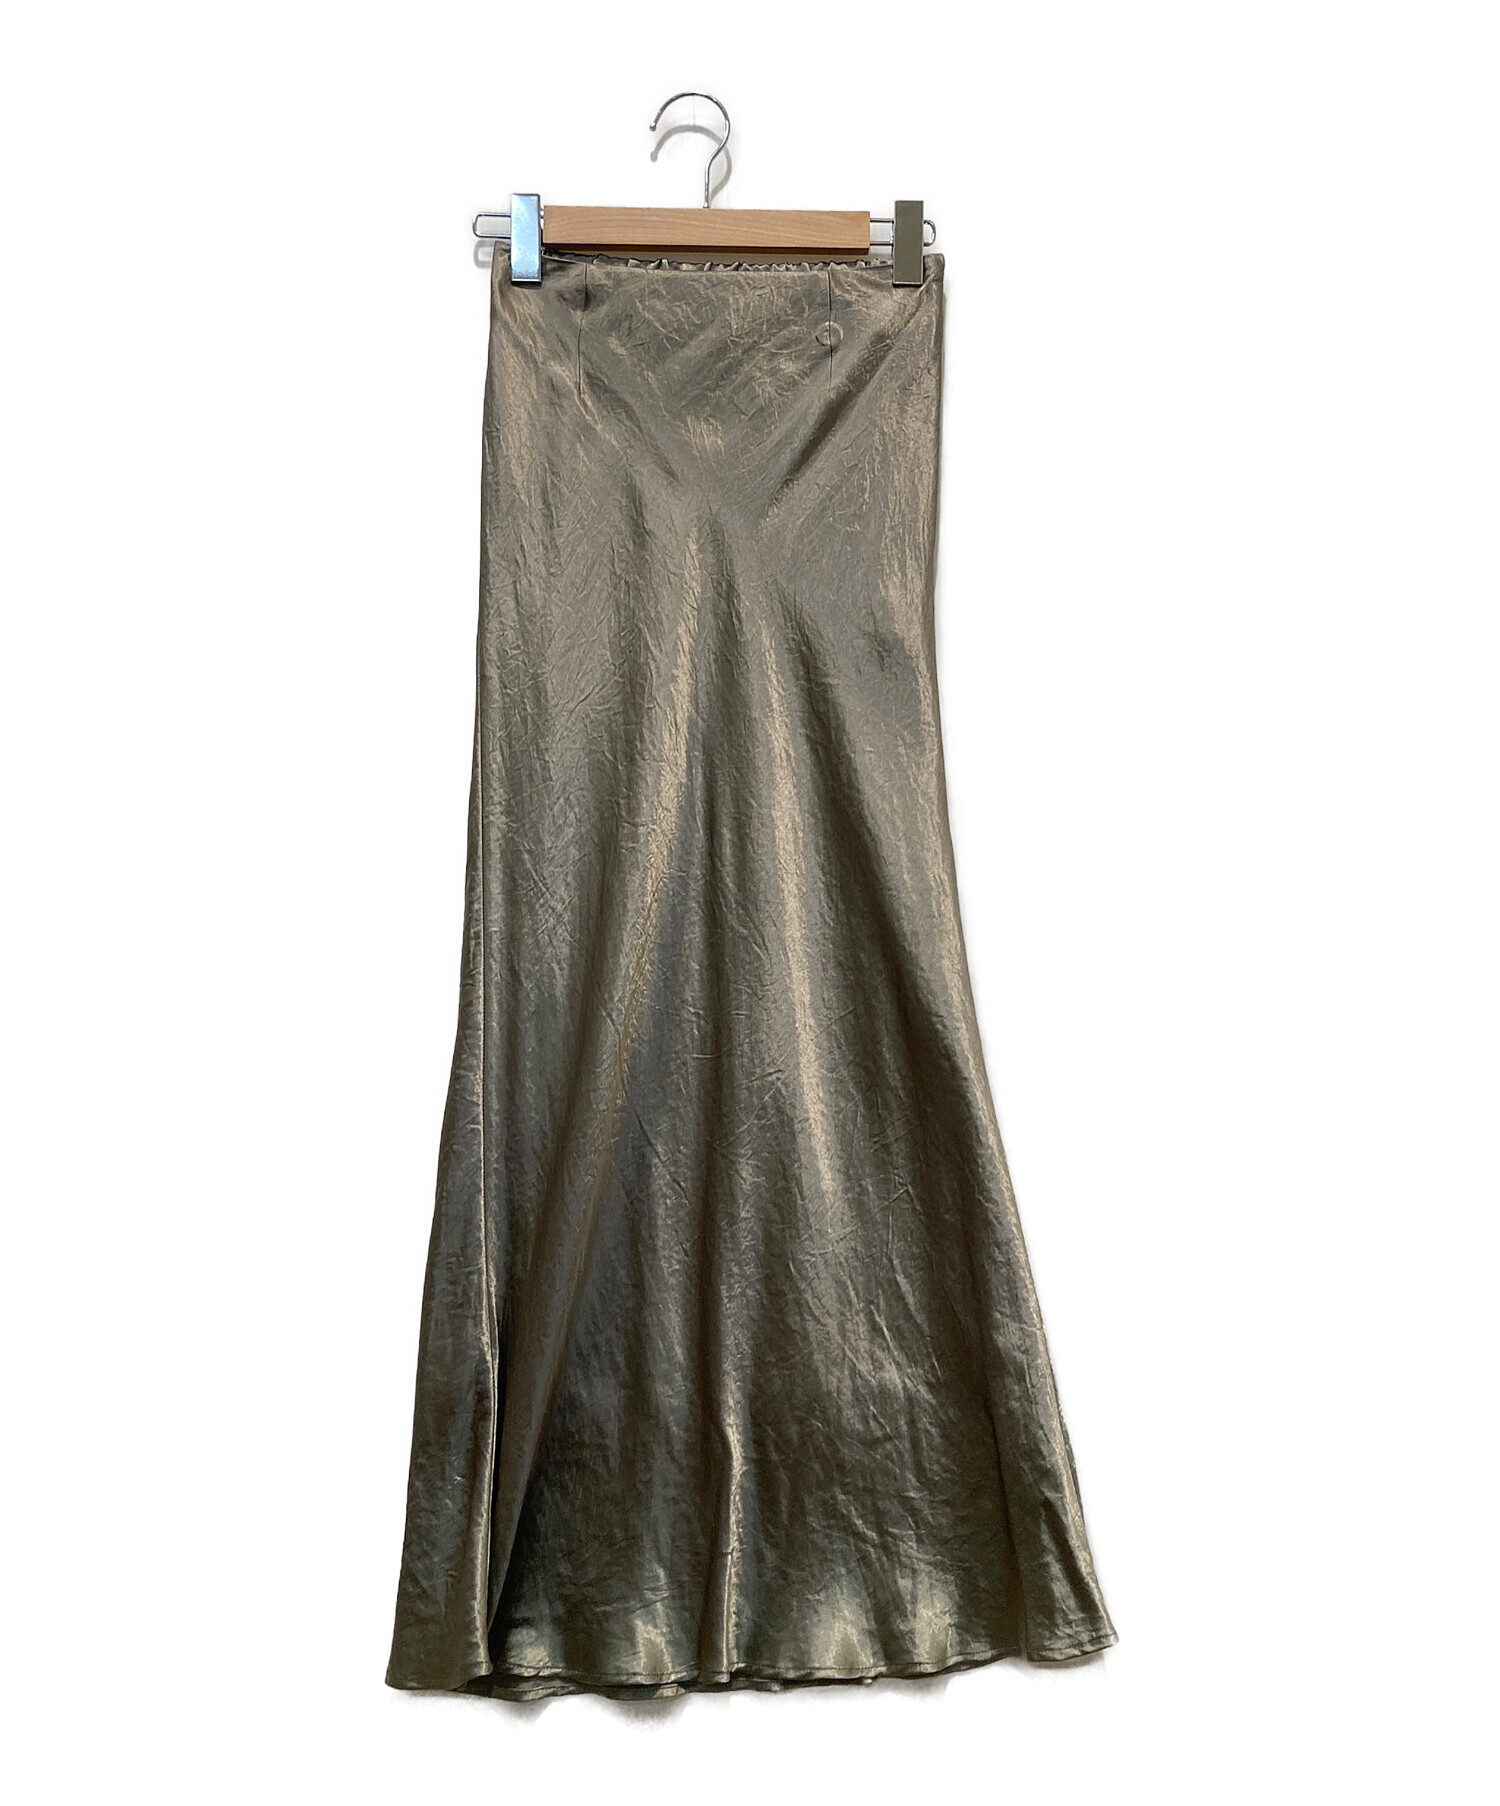 SACRA (サクラ) アセテートサテンスカート グレー サイズ:36